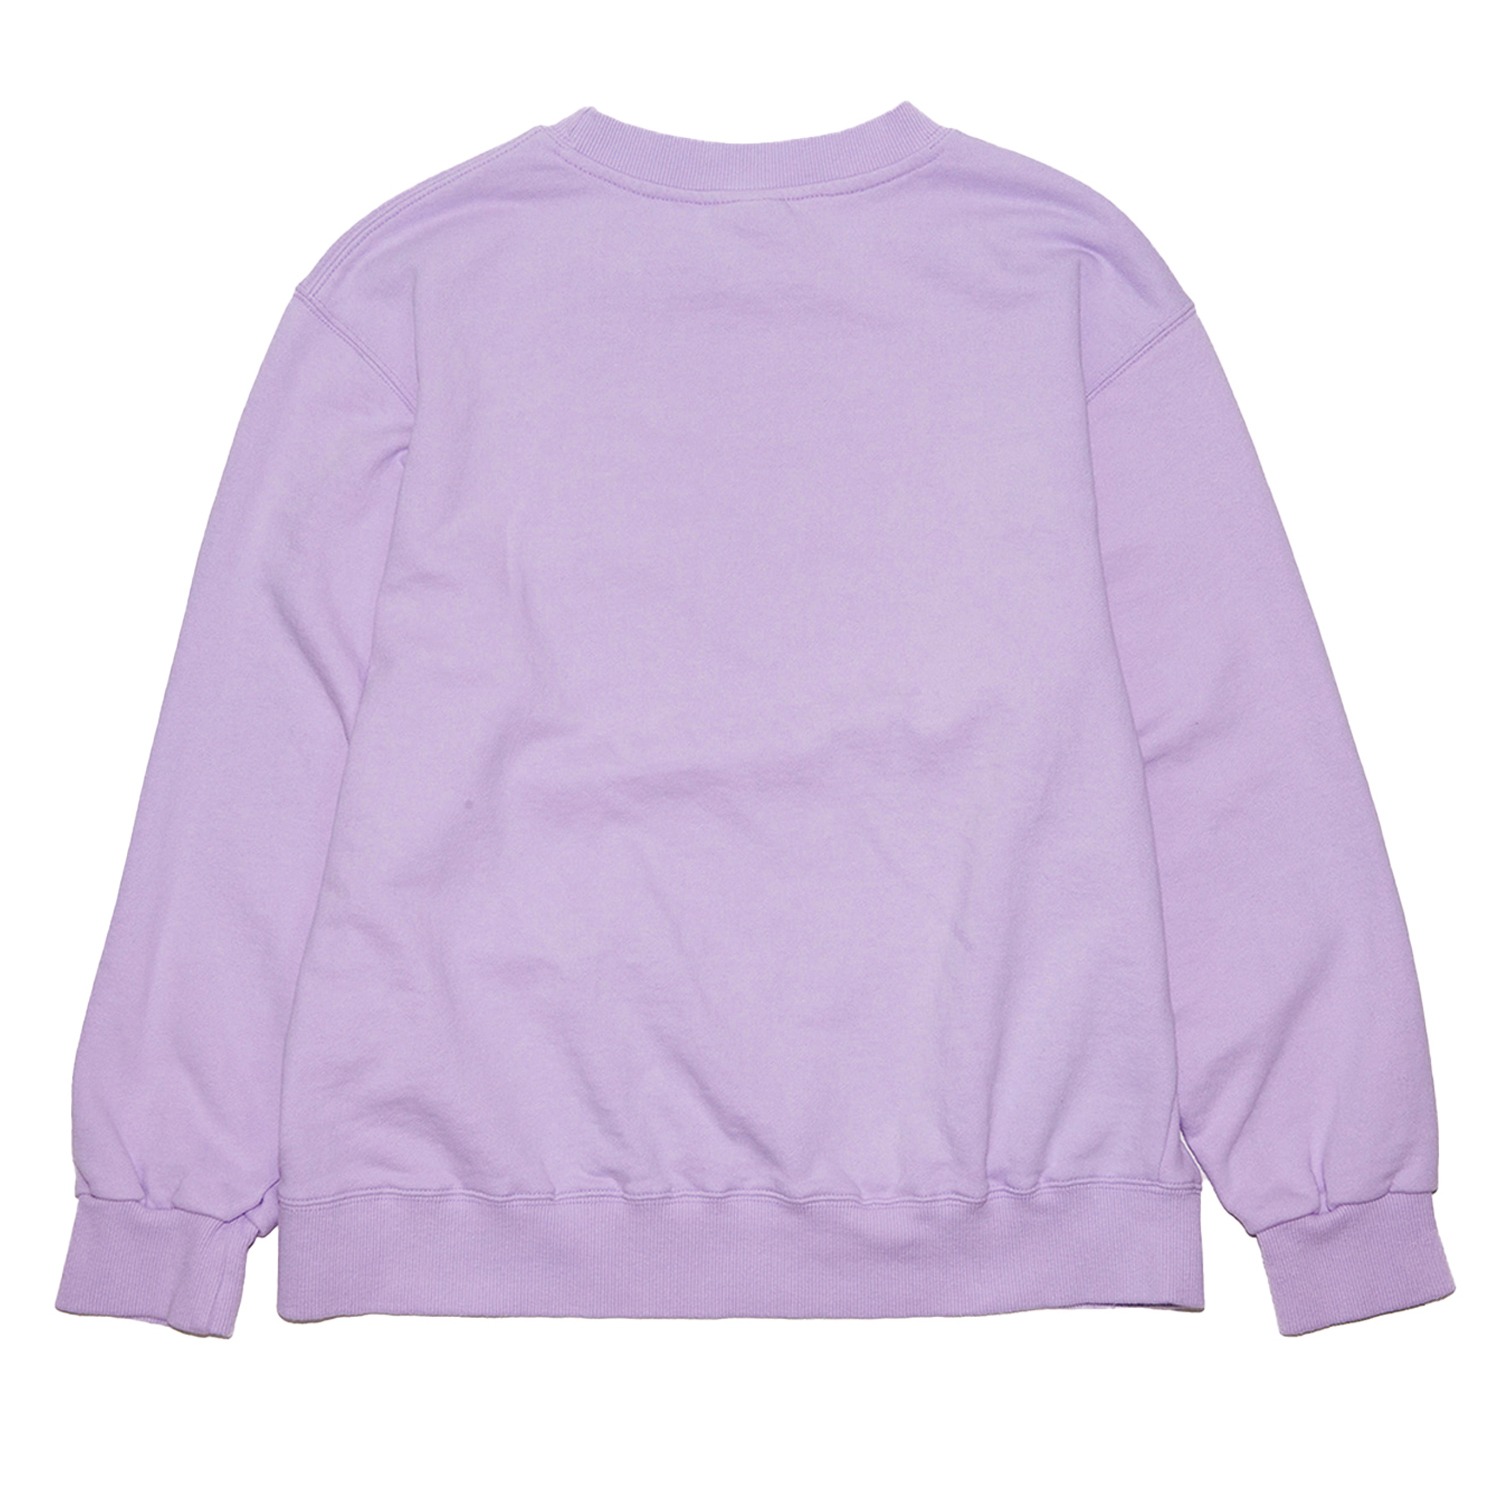 사랑해바보야 맨투맨 라벤더 I love Dummy over-fit sweatshirt (Lavender)